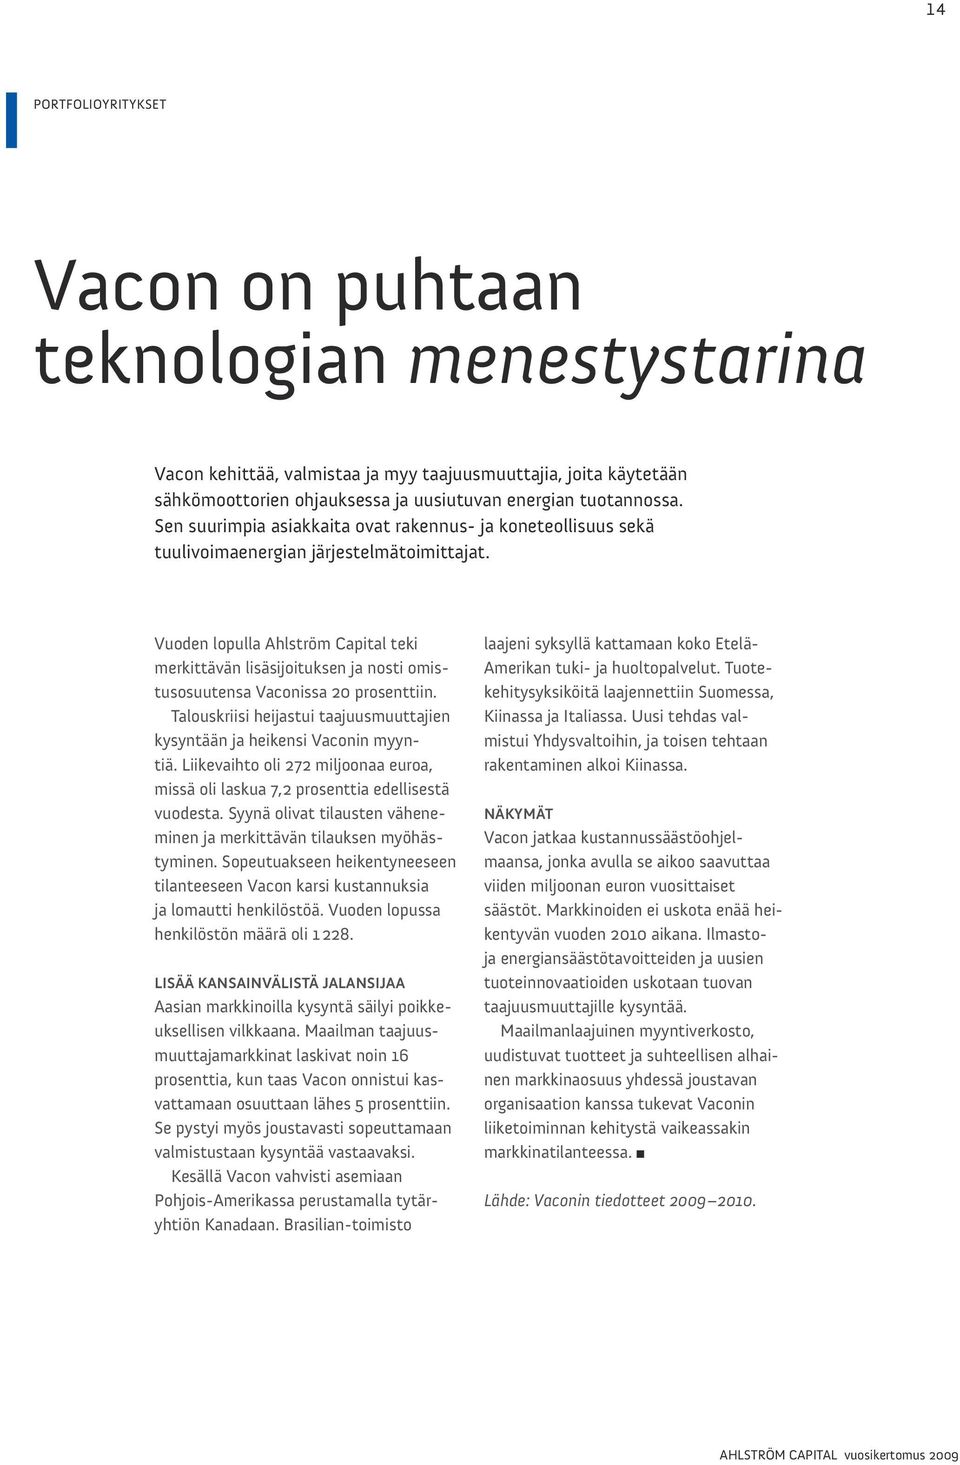 Vuoden lopulla Ahlström Capital teki merkittävän lisäsijoituksen ja nosti omistusosuutensa Vaconissa 20 prosenttiin. talouskriisi heijastui taajuusmuuttajien kysyntään ja heikensi Vaconin myyntiä.